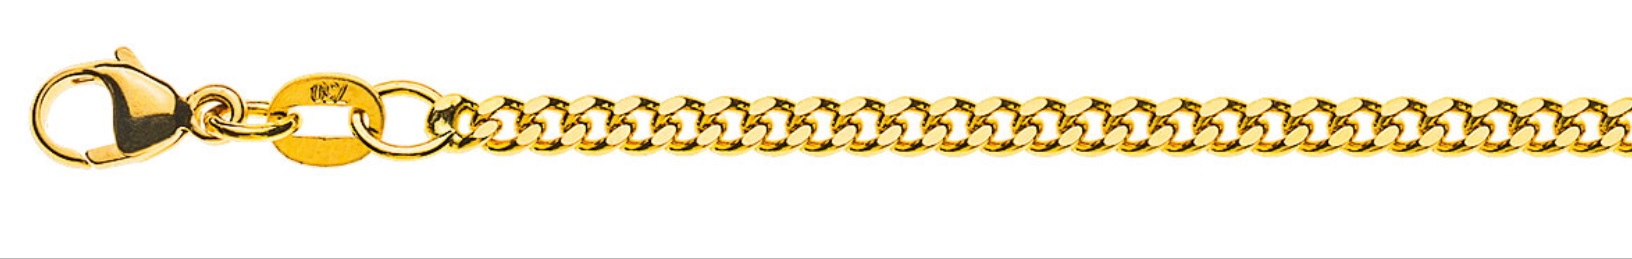 AURONOS Prestige Halskette Gelbgold 18K Panzerkette geschliffen 50cm 2.6mm